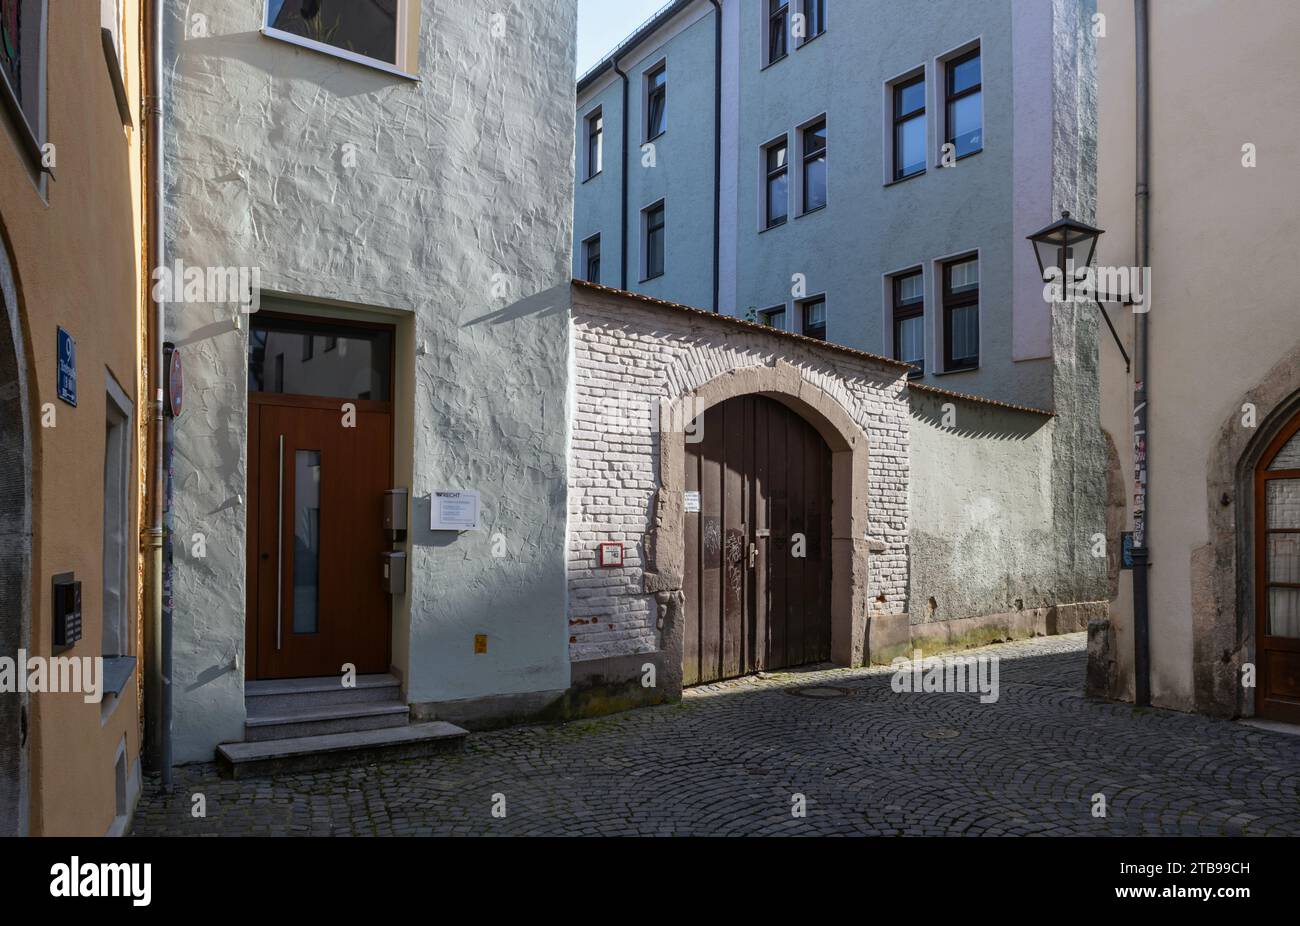 Distrito histórico de Ratisbona, Alemania Foto de stock